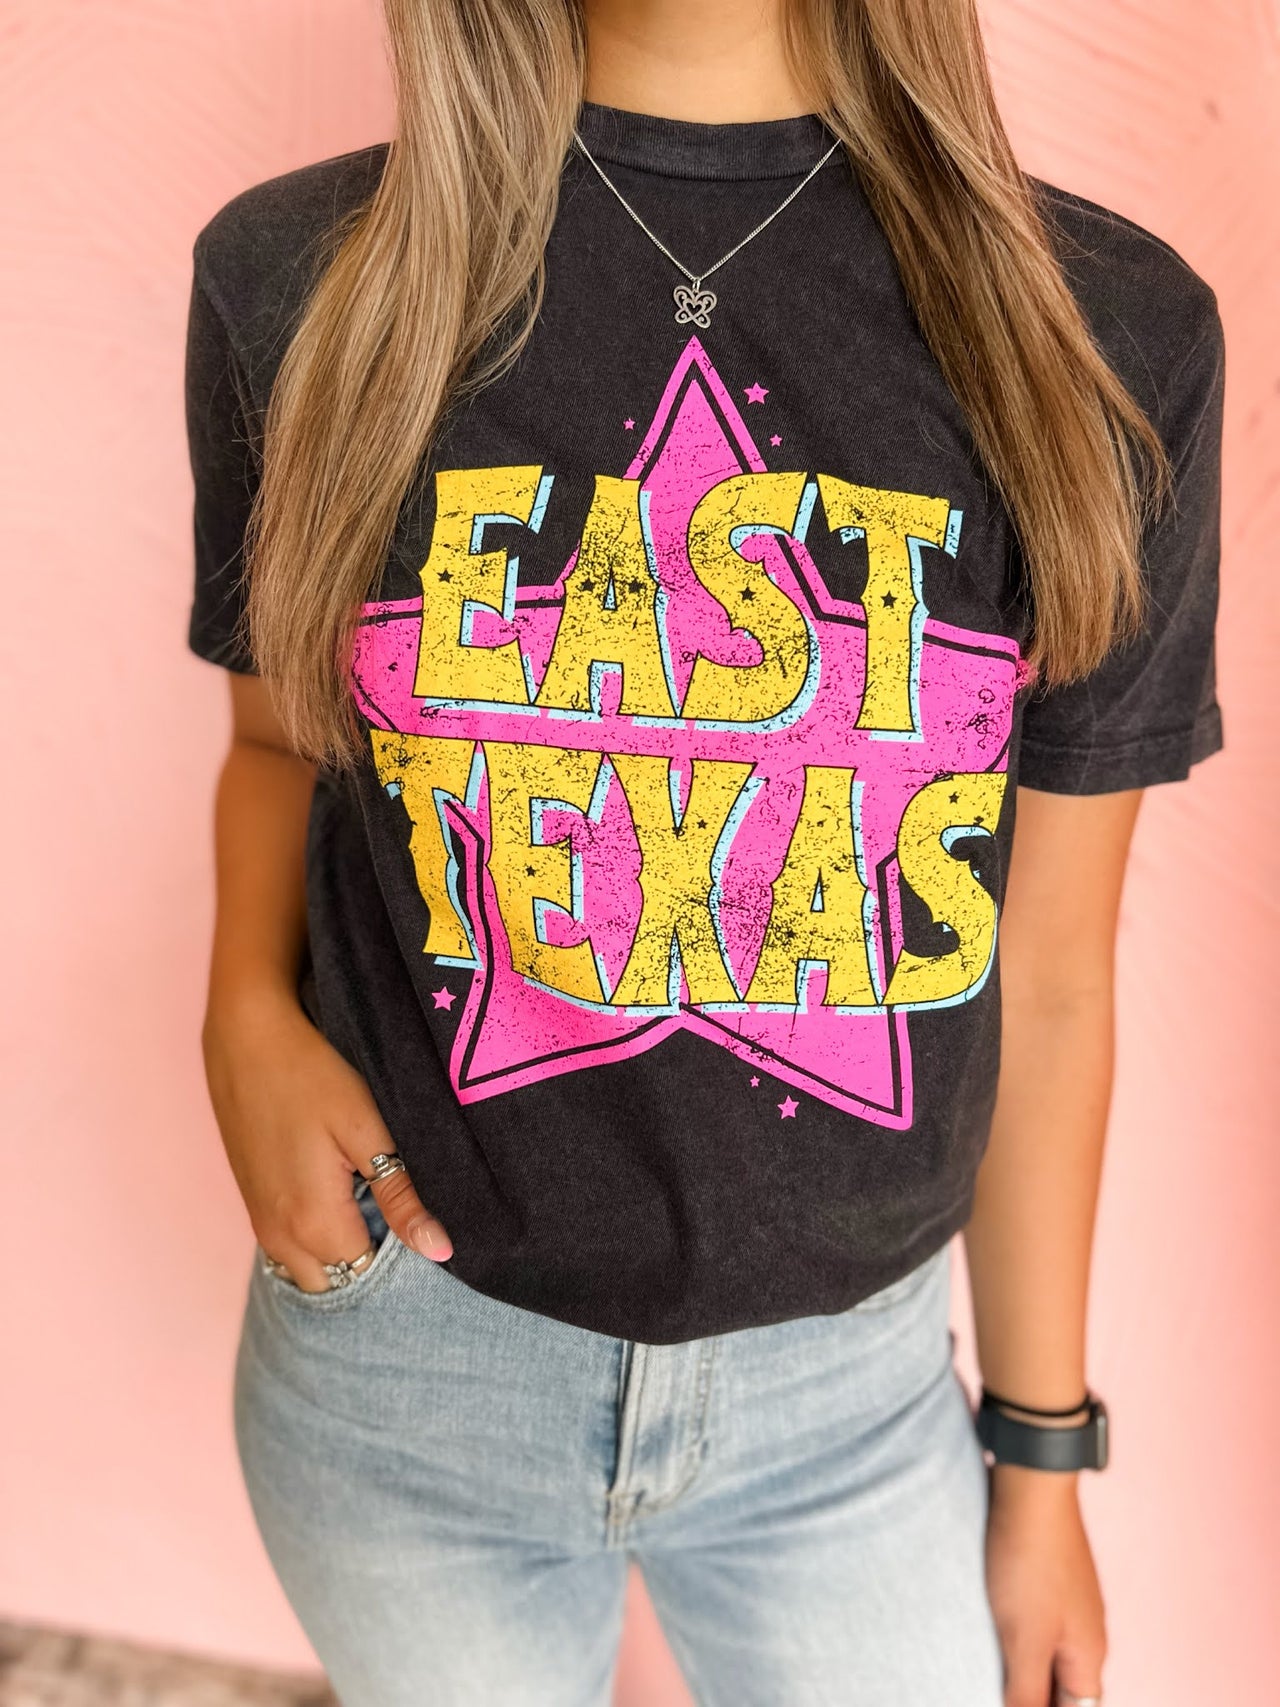 East Texas Star